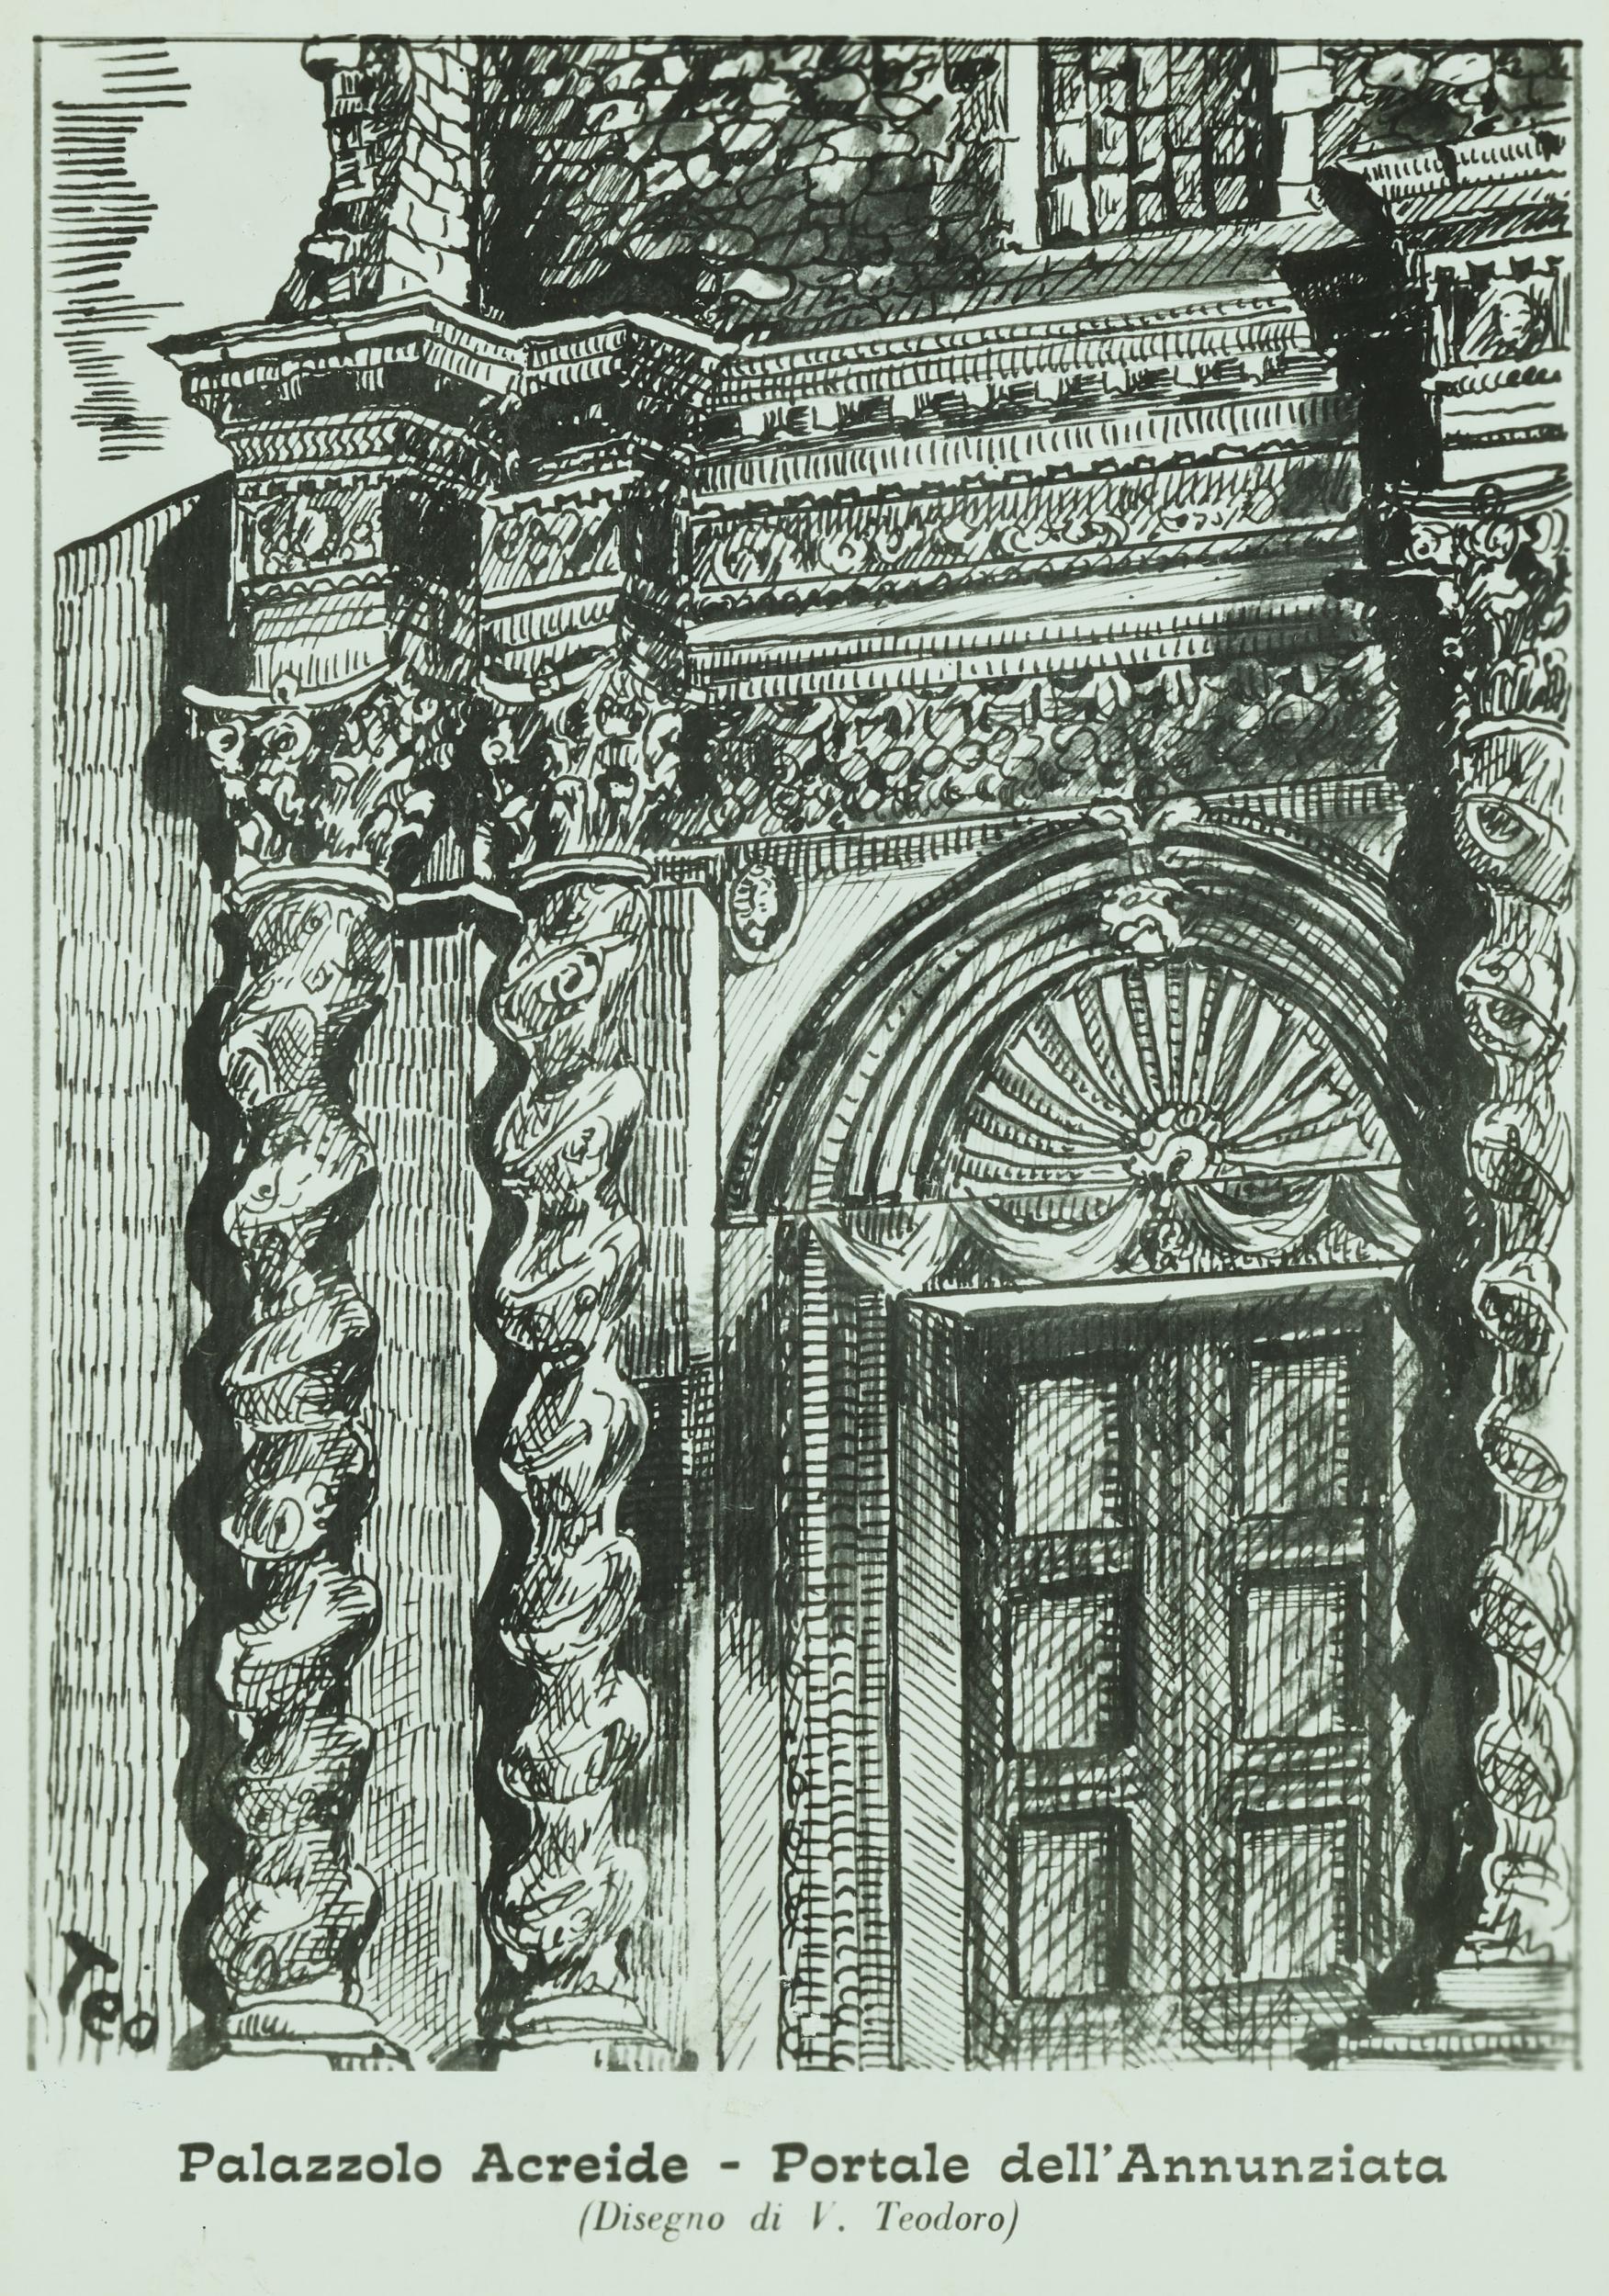 Fotografo non identificato, Palazzolo Acreide - Disegno di V. Teodoro raffigurante il portale della Chiesa dell'Annunziata, 1876-1900, gelatina ai sali d'argento/carta, MPI6074273